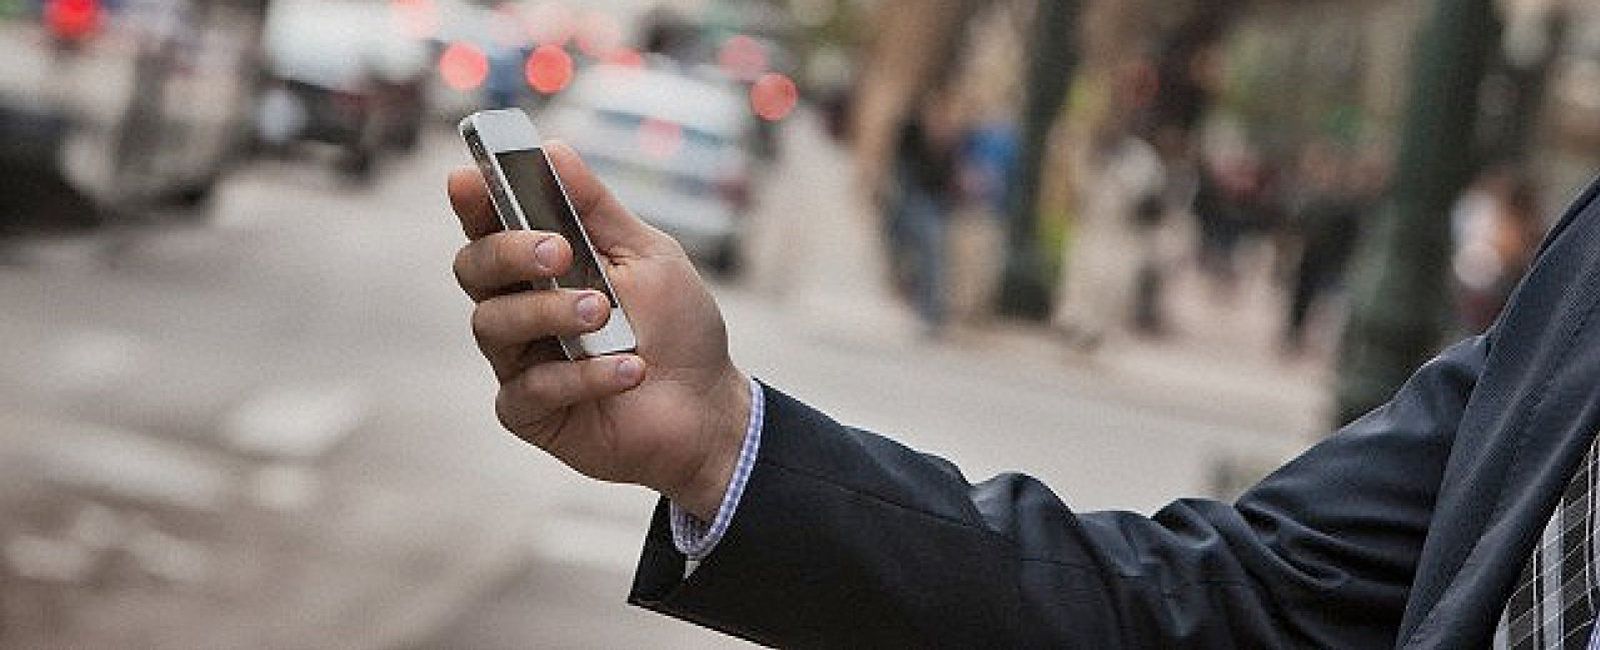 Foto: Las llamadas móviles gratuitas, cada vez más cerca